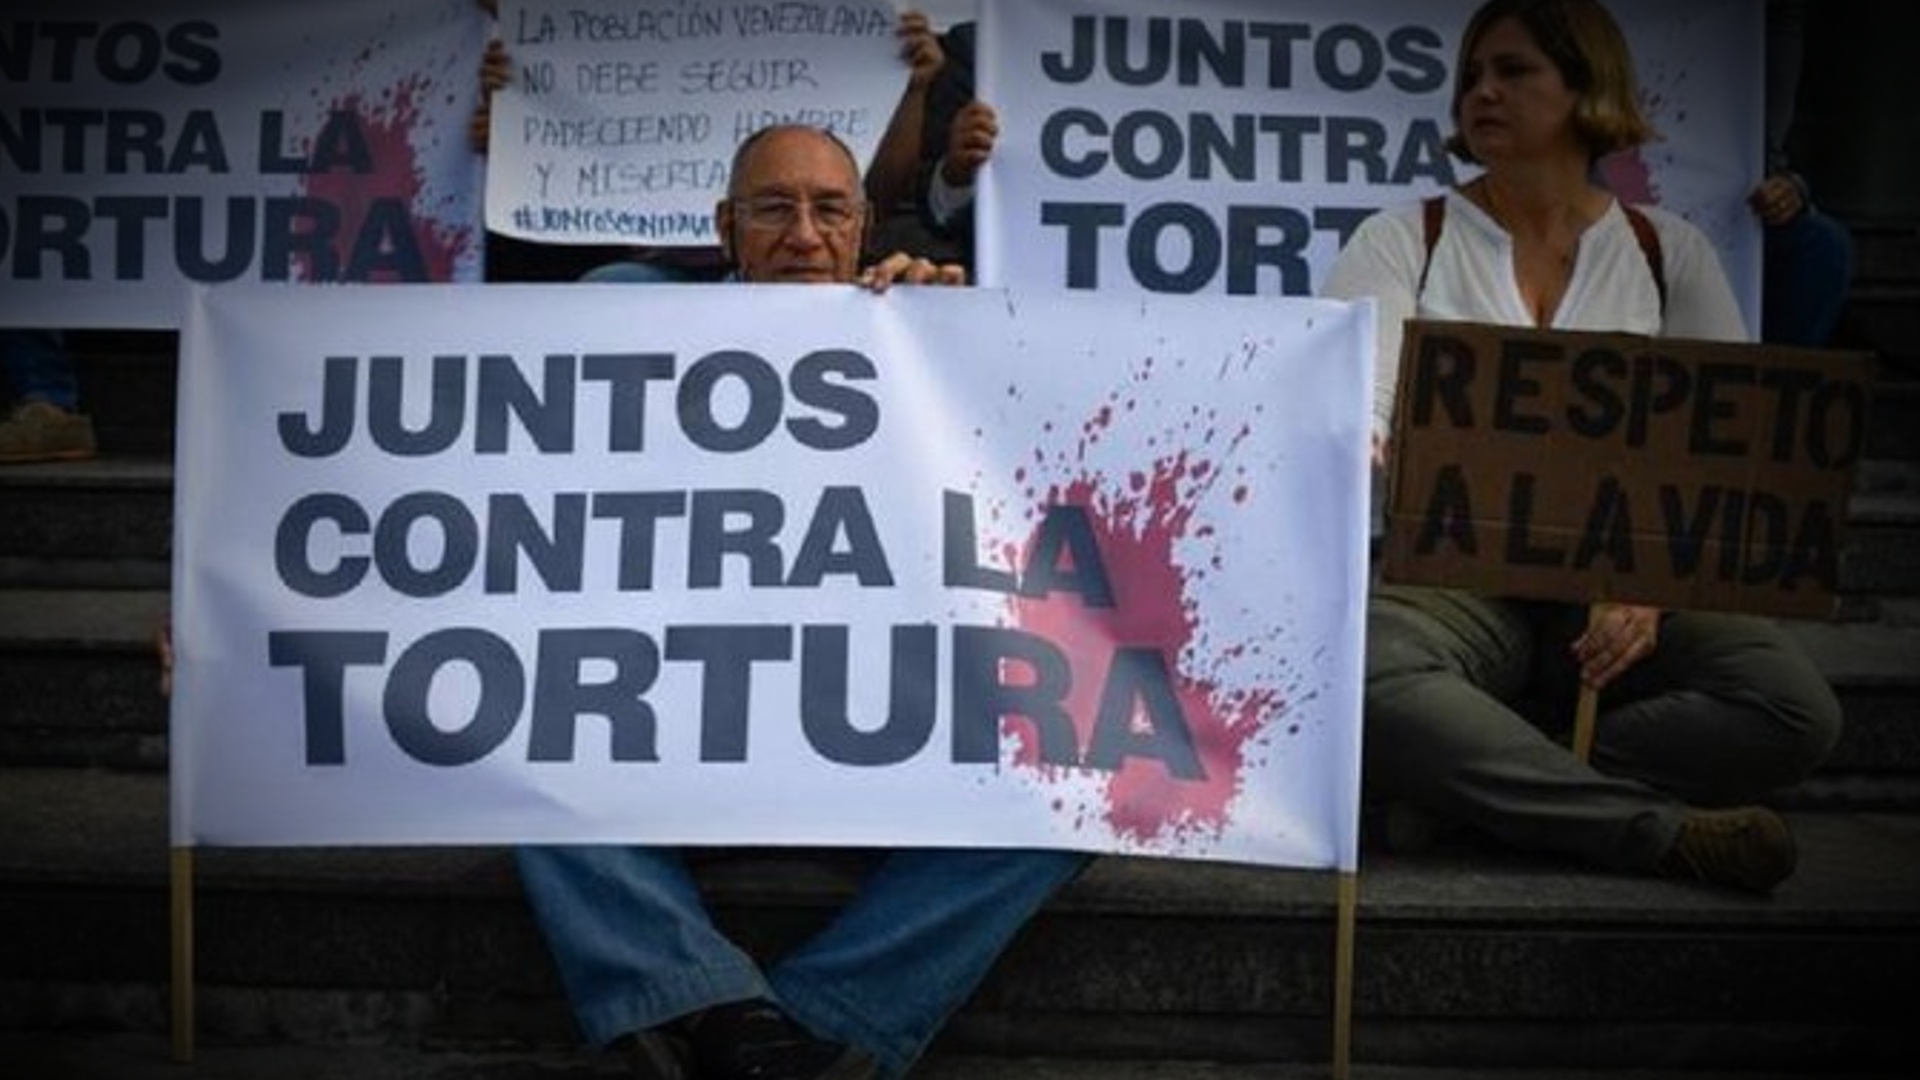 CLAVES | En 2022 abundaron las detenciones arbitrarias, tortura y censura: Informe del Departamento de Estado sobre Venezuela